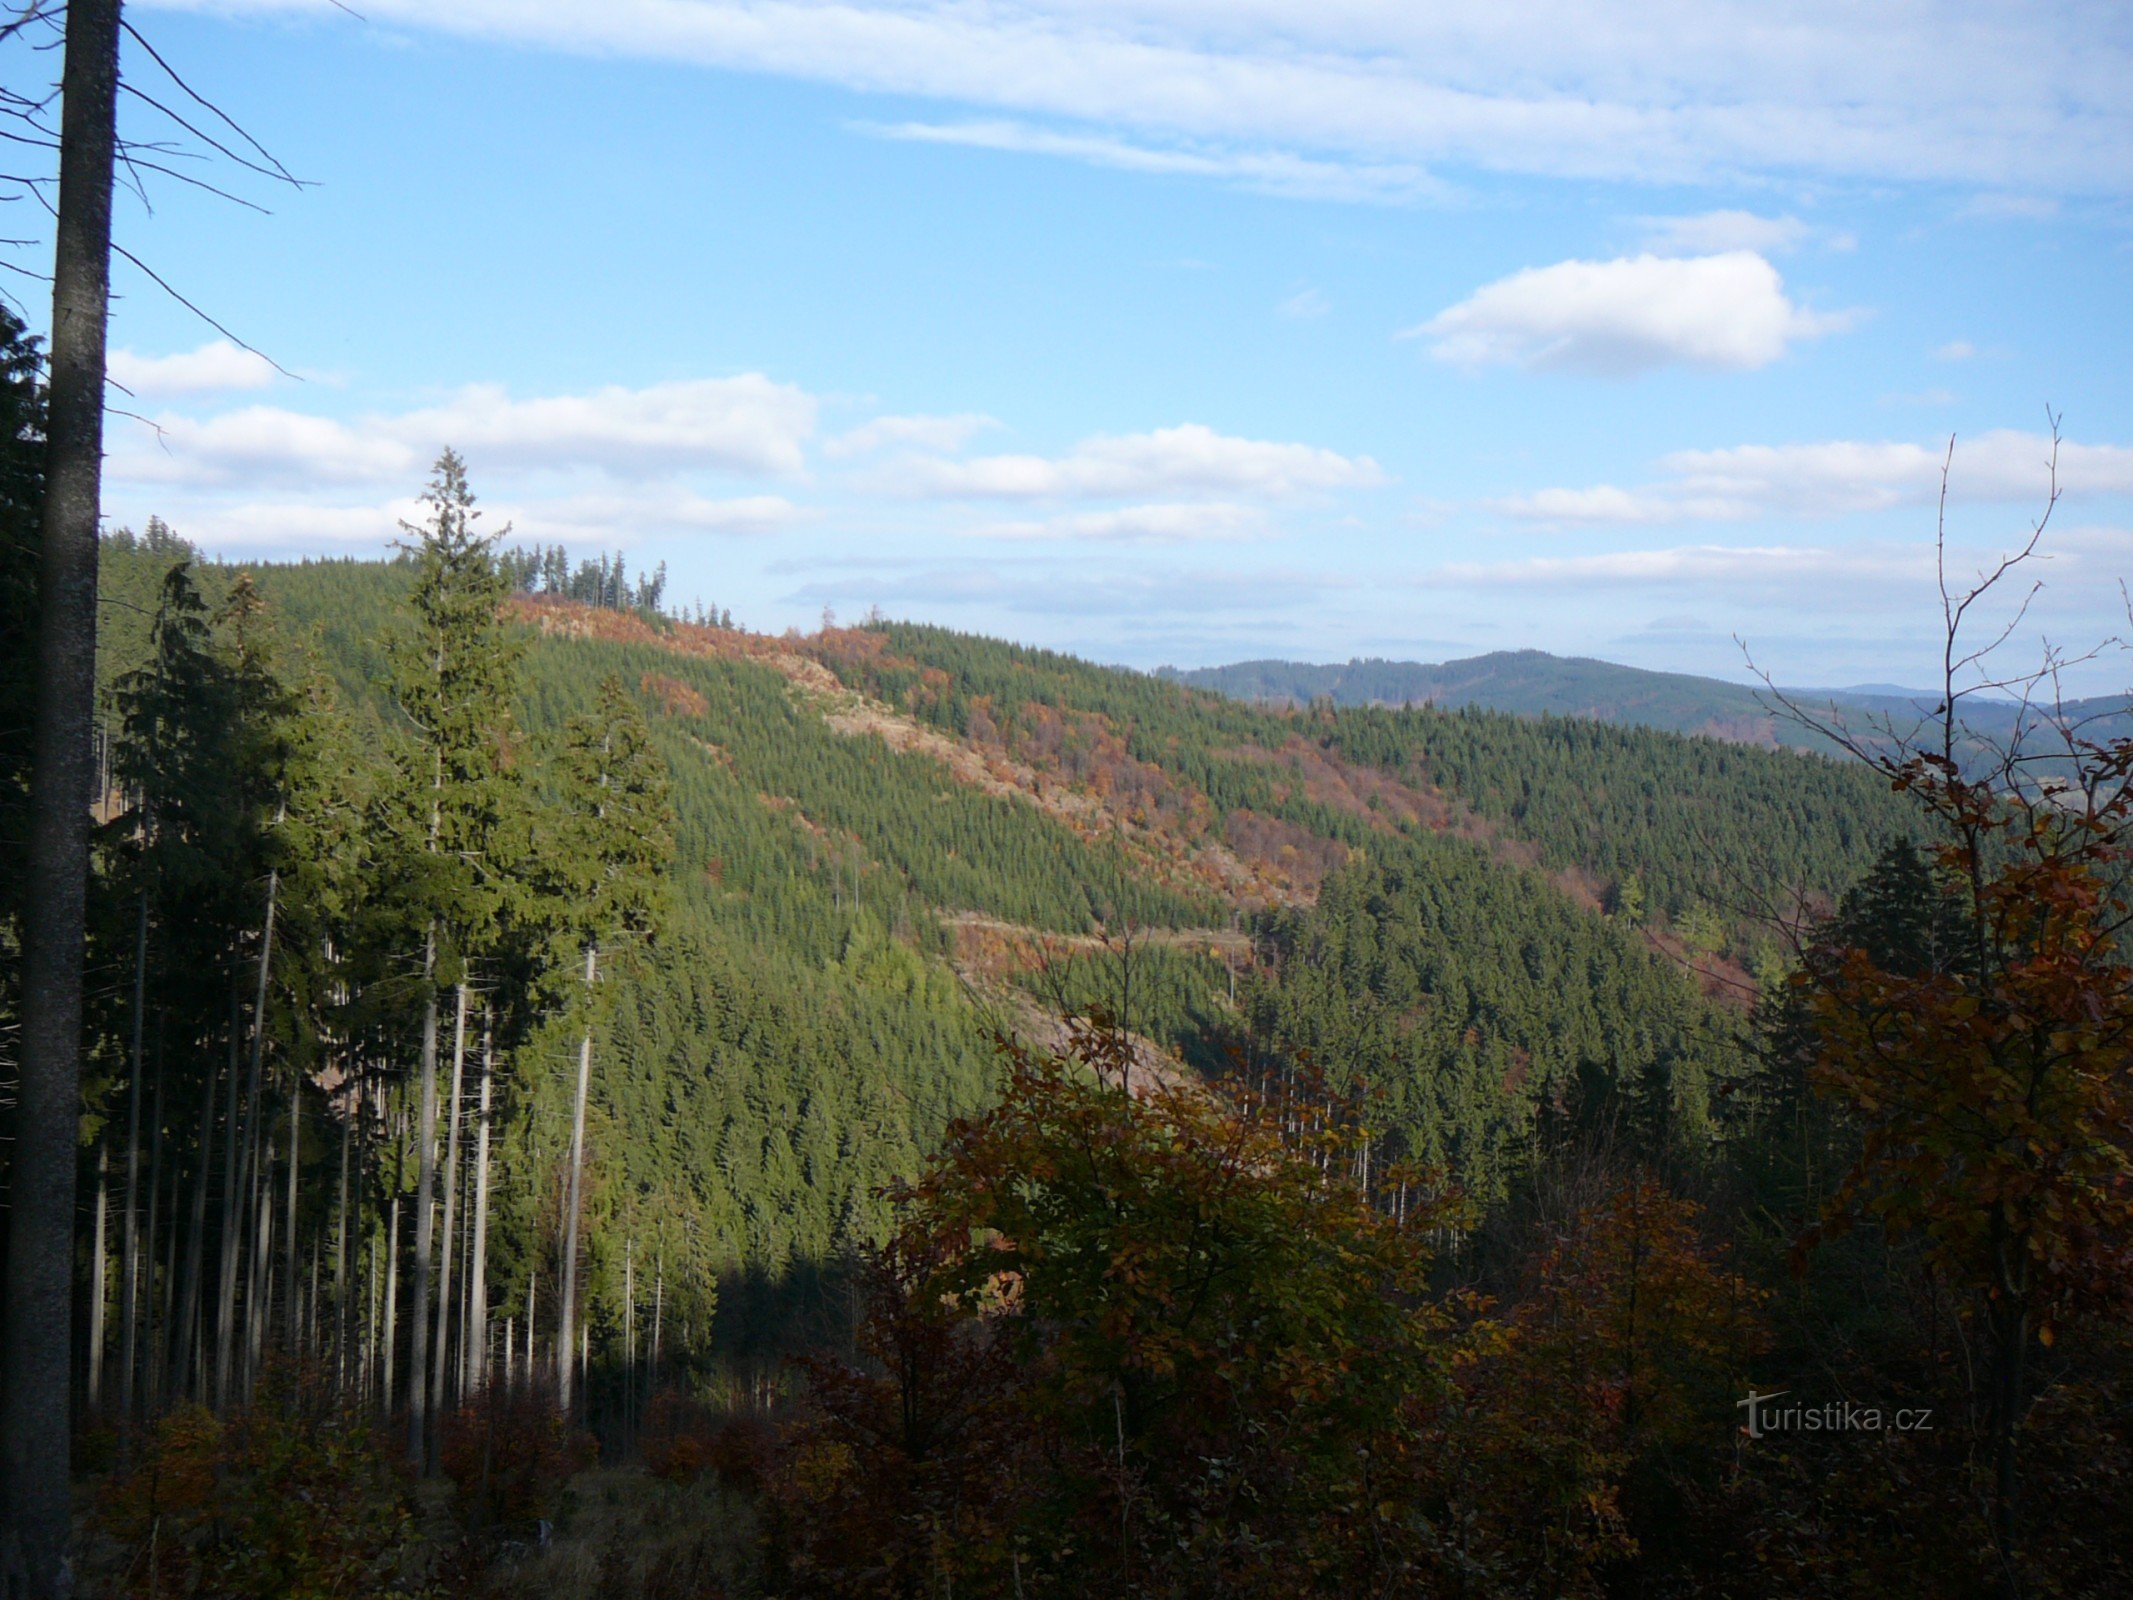 Kyčerová, Hrachovicný les and behind Těšíňoky